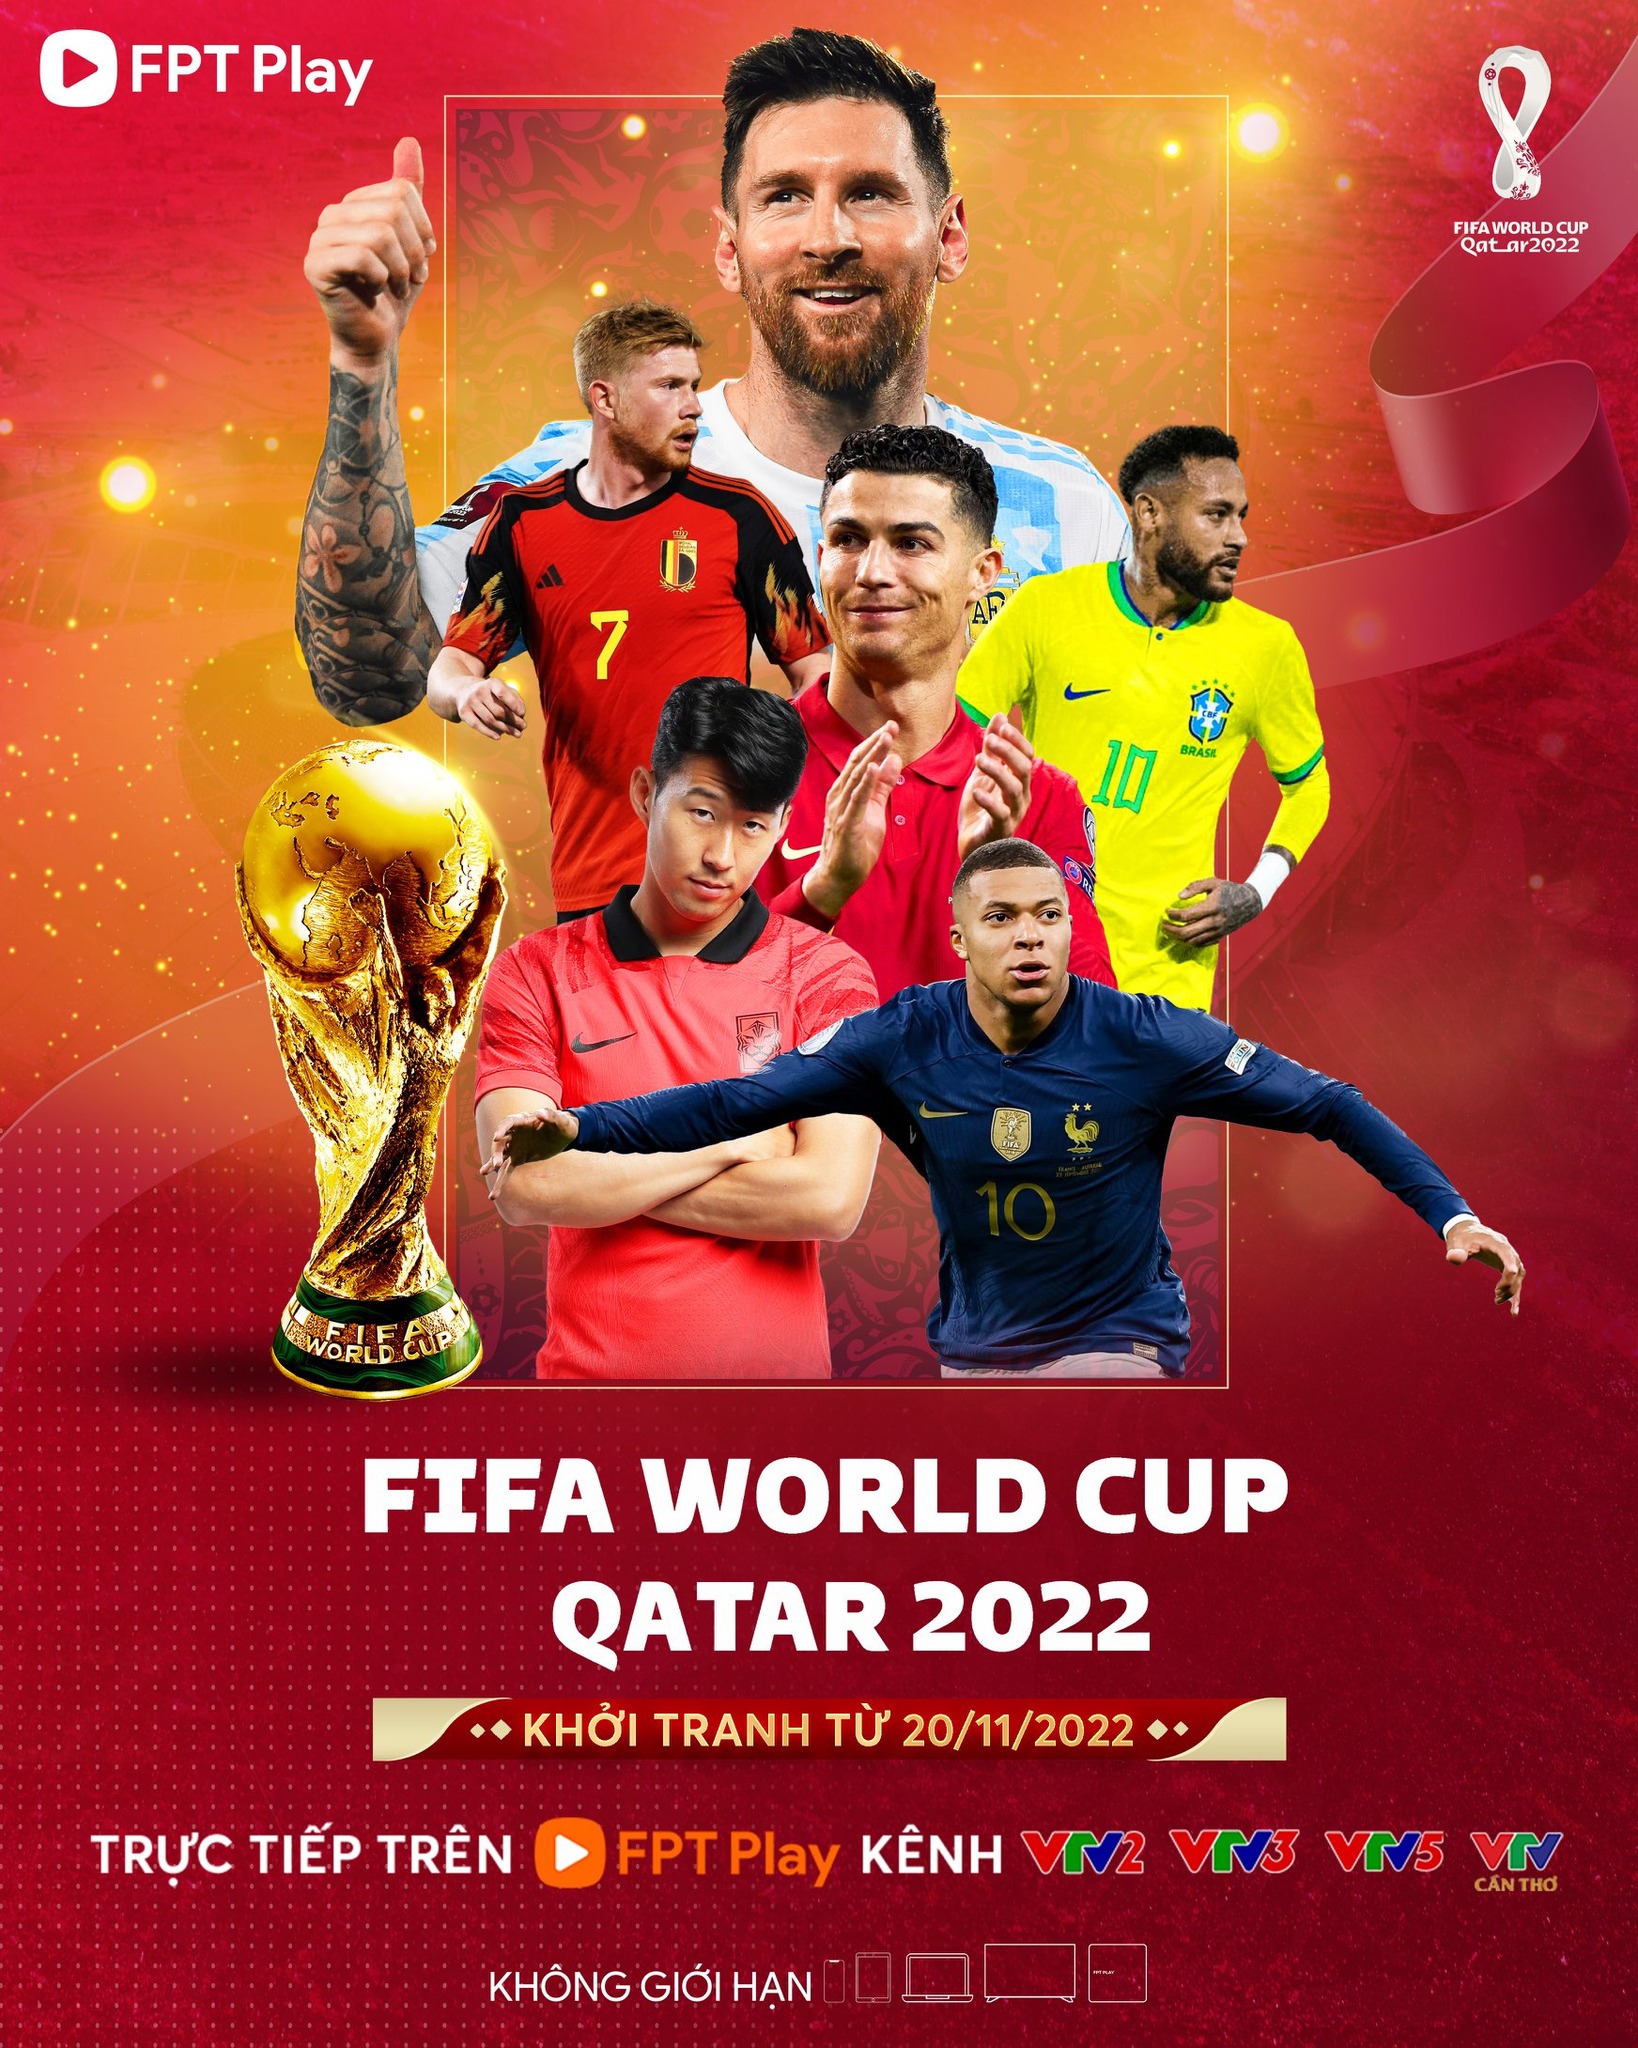 FPT Play truyền hình trực tiếp World Cup 2022